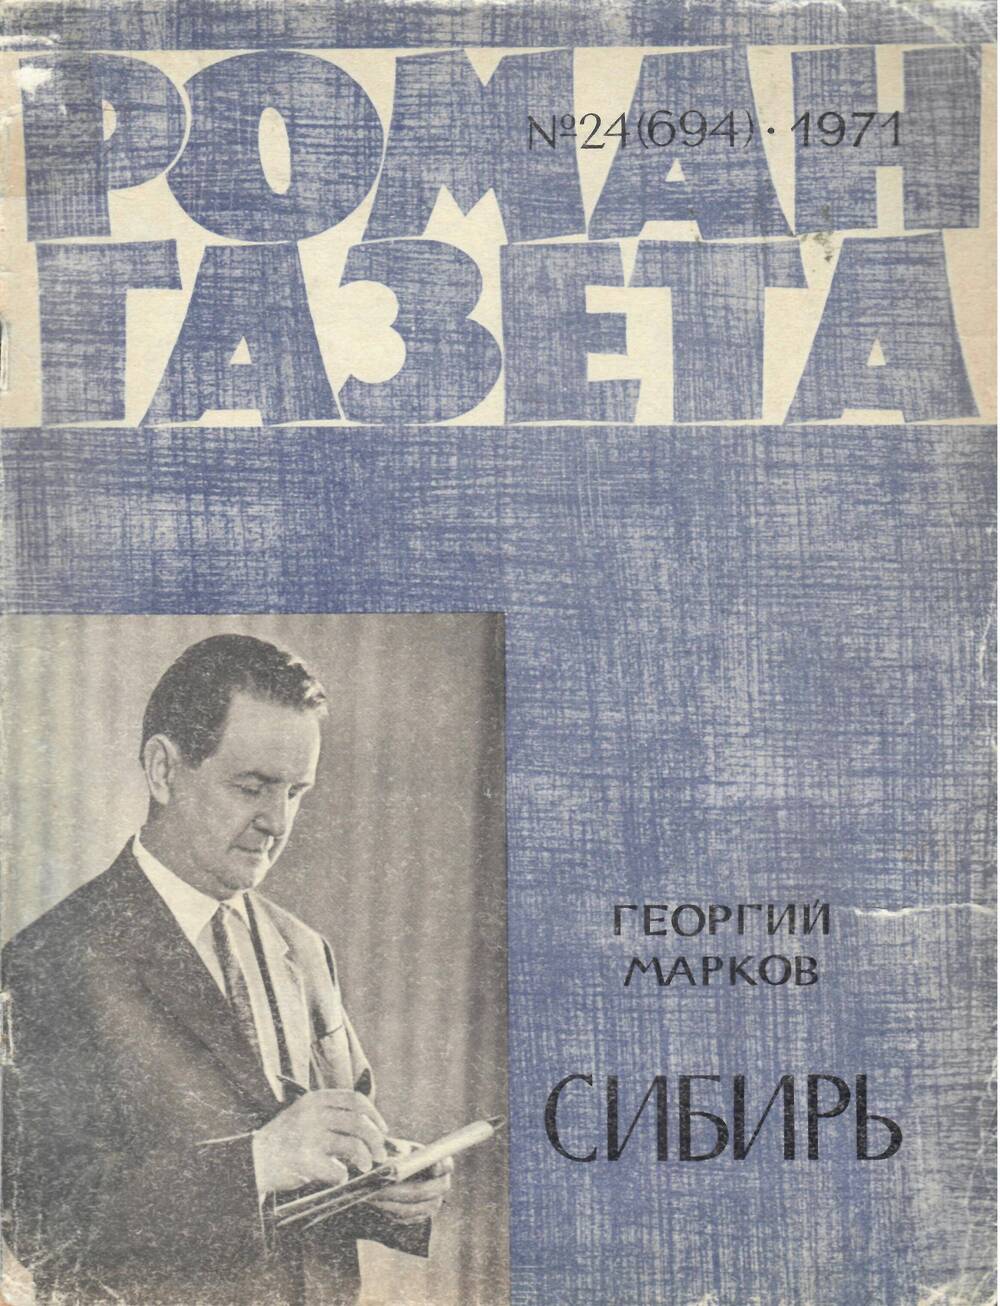 Роман-газета № 24(694). 1971 г.